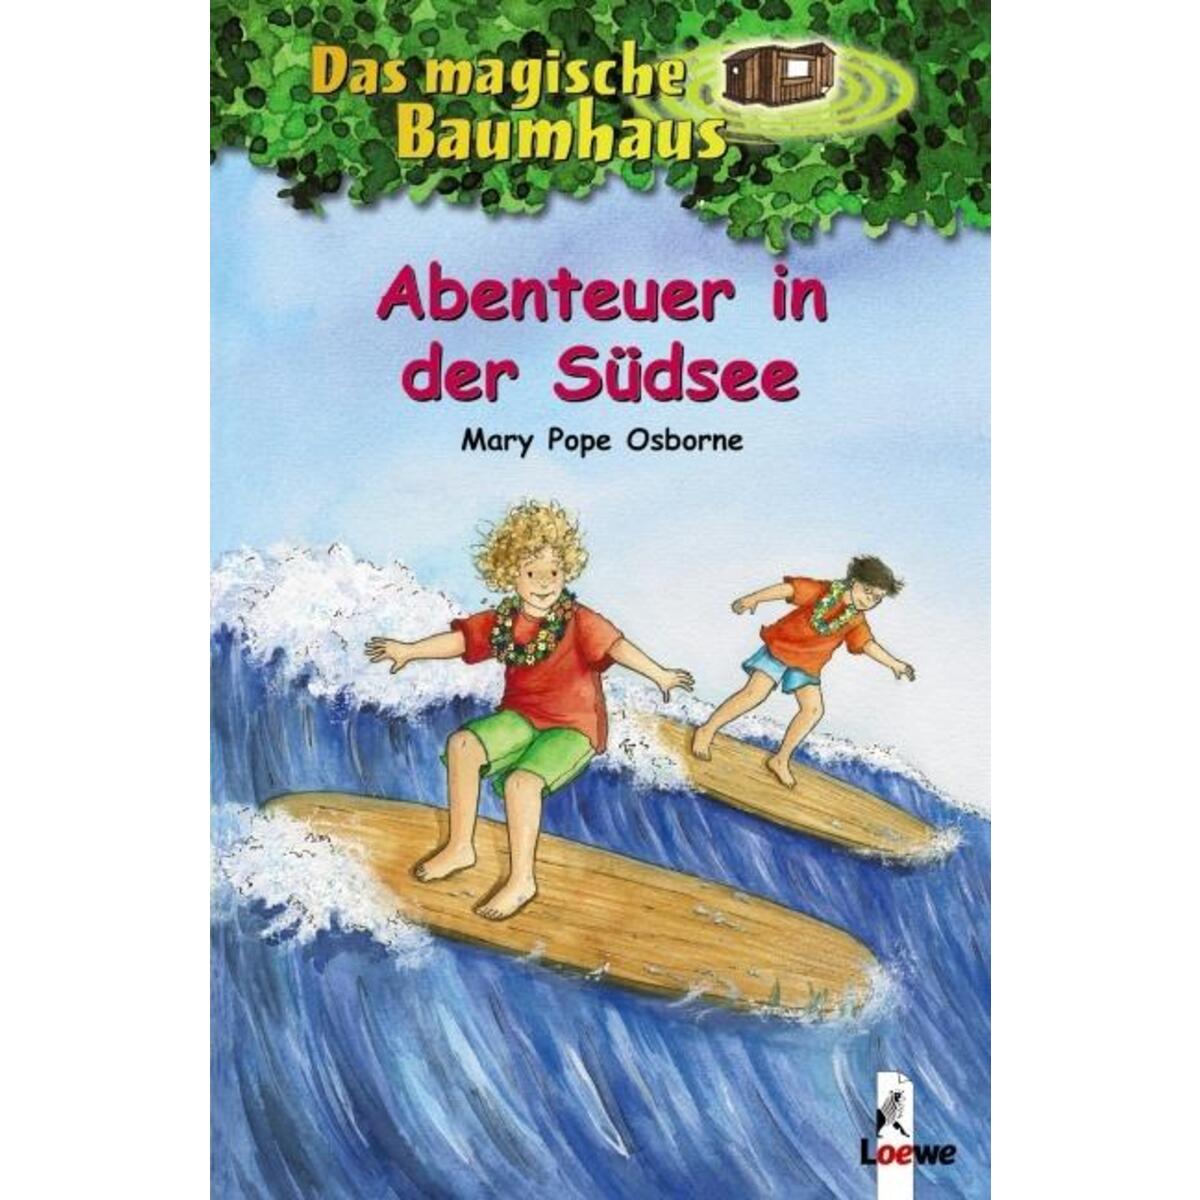 Das magische Baumhaus 26. Abenteuer in der Südsee von Loewe Verlag GmbH